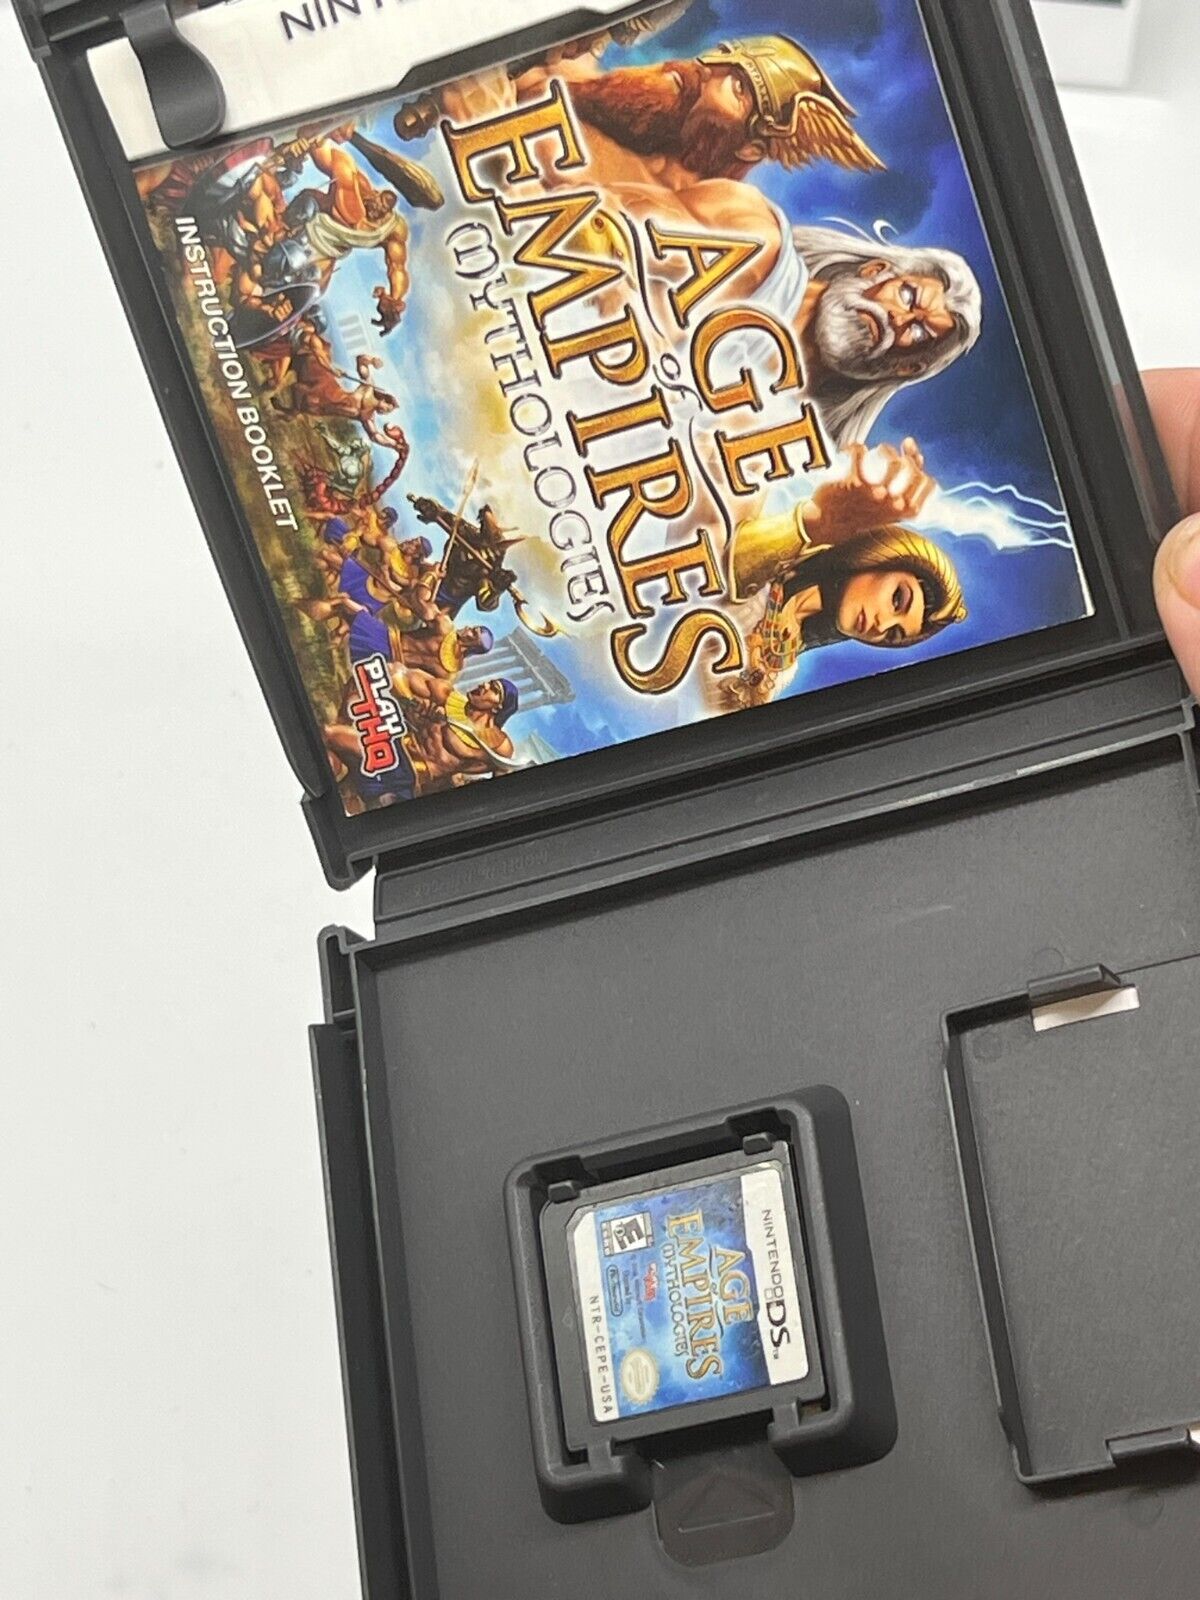 Age of Empires: Mythologies (Nintendo DS, 2008) - Tested